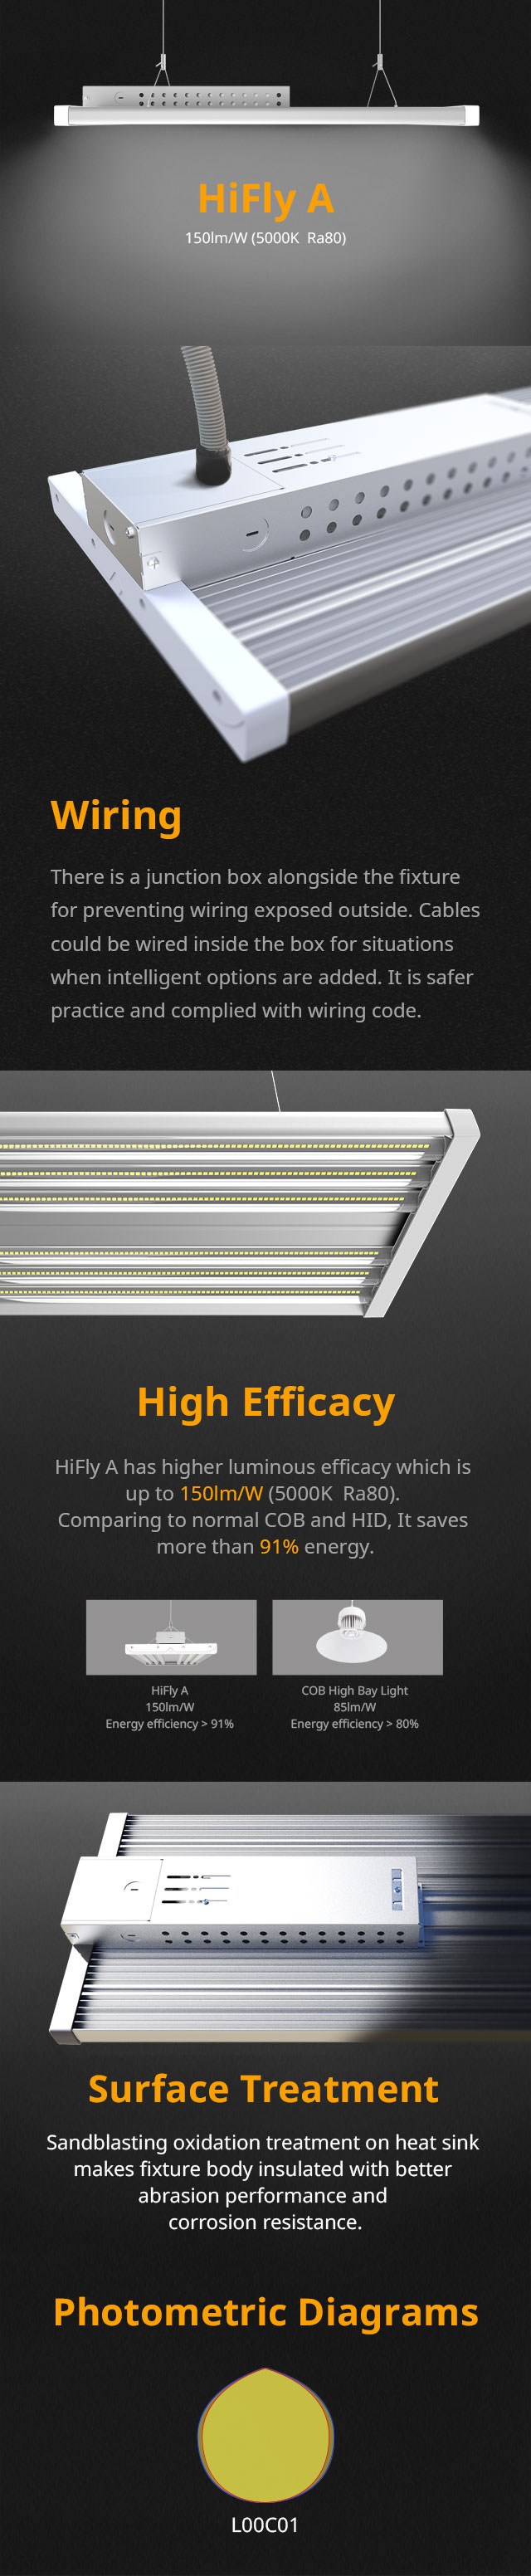 LHB07 HiFly A 150lm per watt linear light